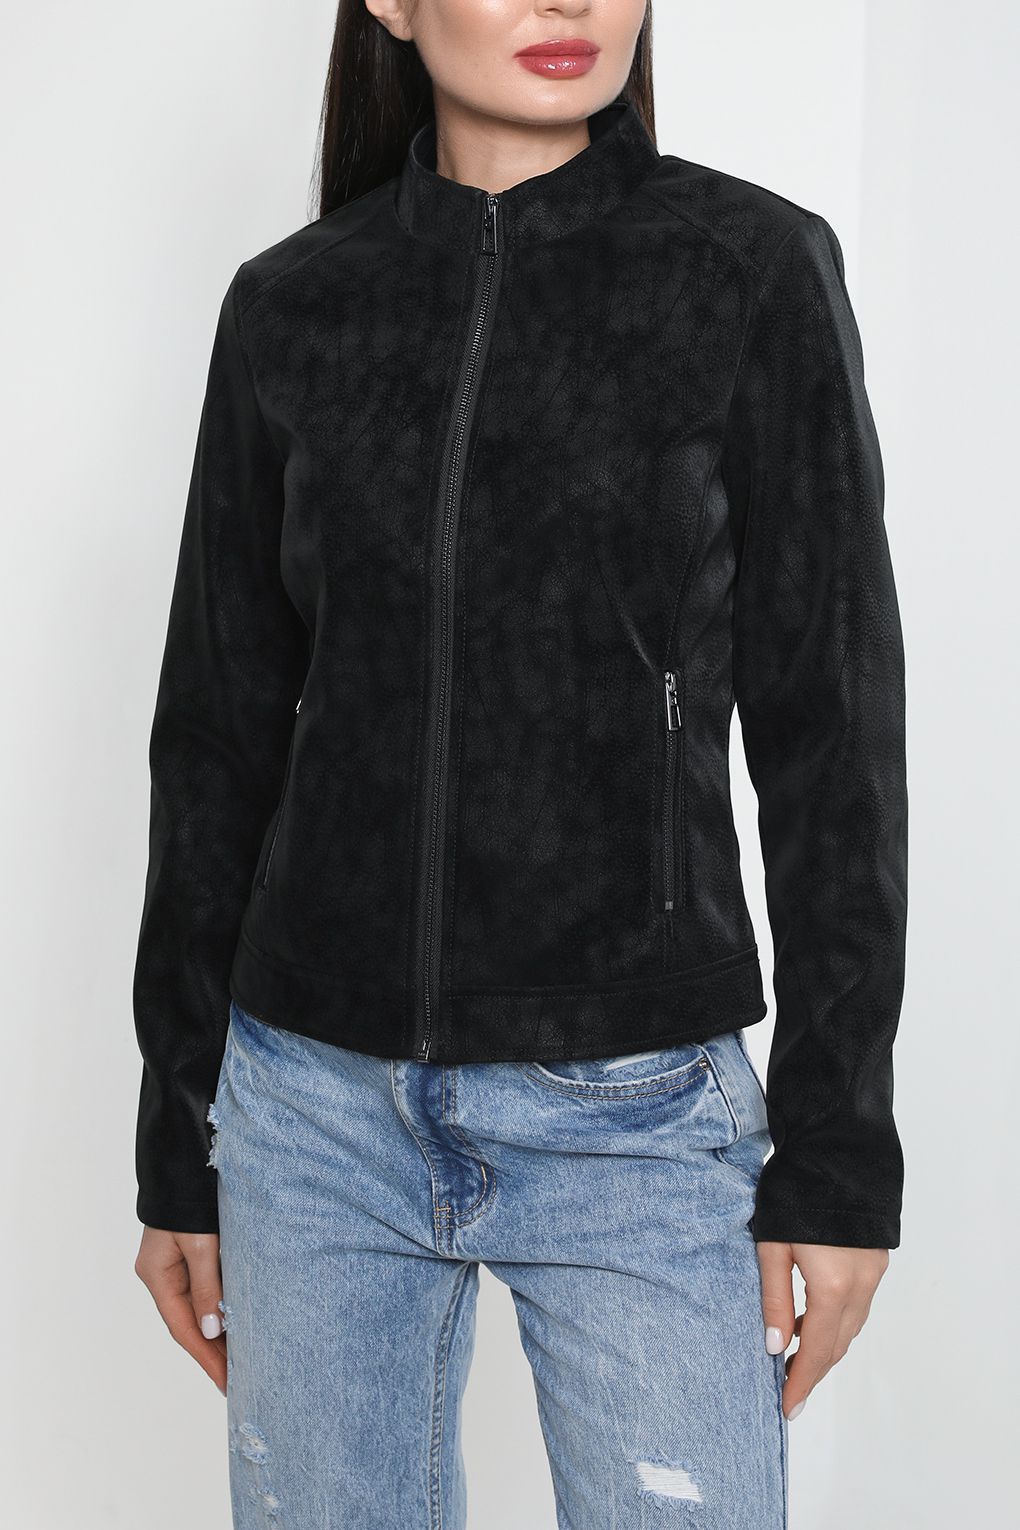 Кожаная куртка женская Desigual 23SWEW02 черная XS